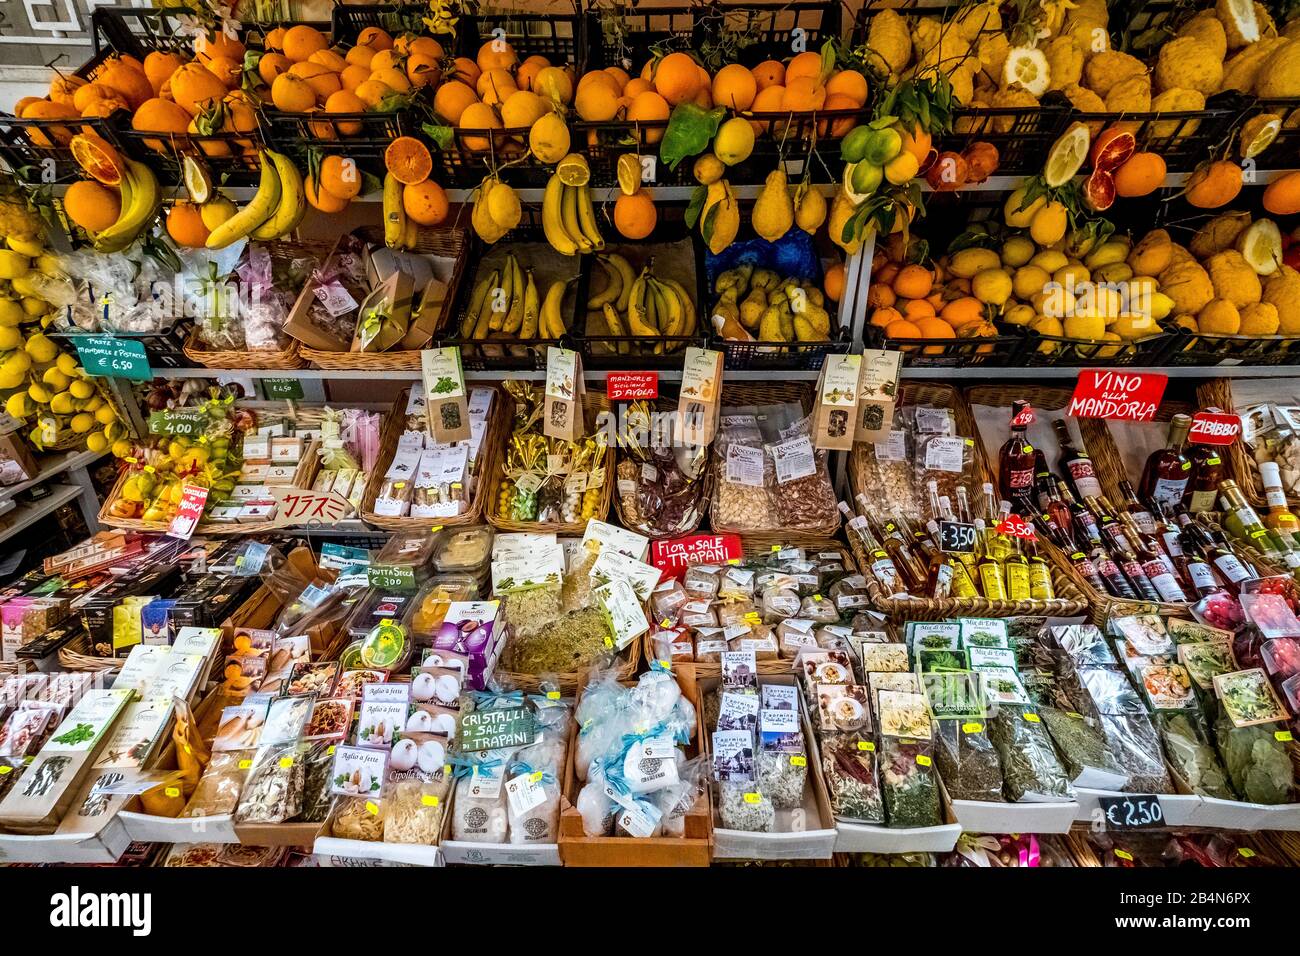 Stand de légumes et paniers de vente, fruits, sels de plantes, Taormine, Italie du sud, Europe, Sicile, Italie Banque D'Images